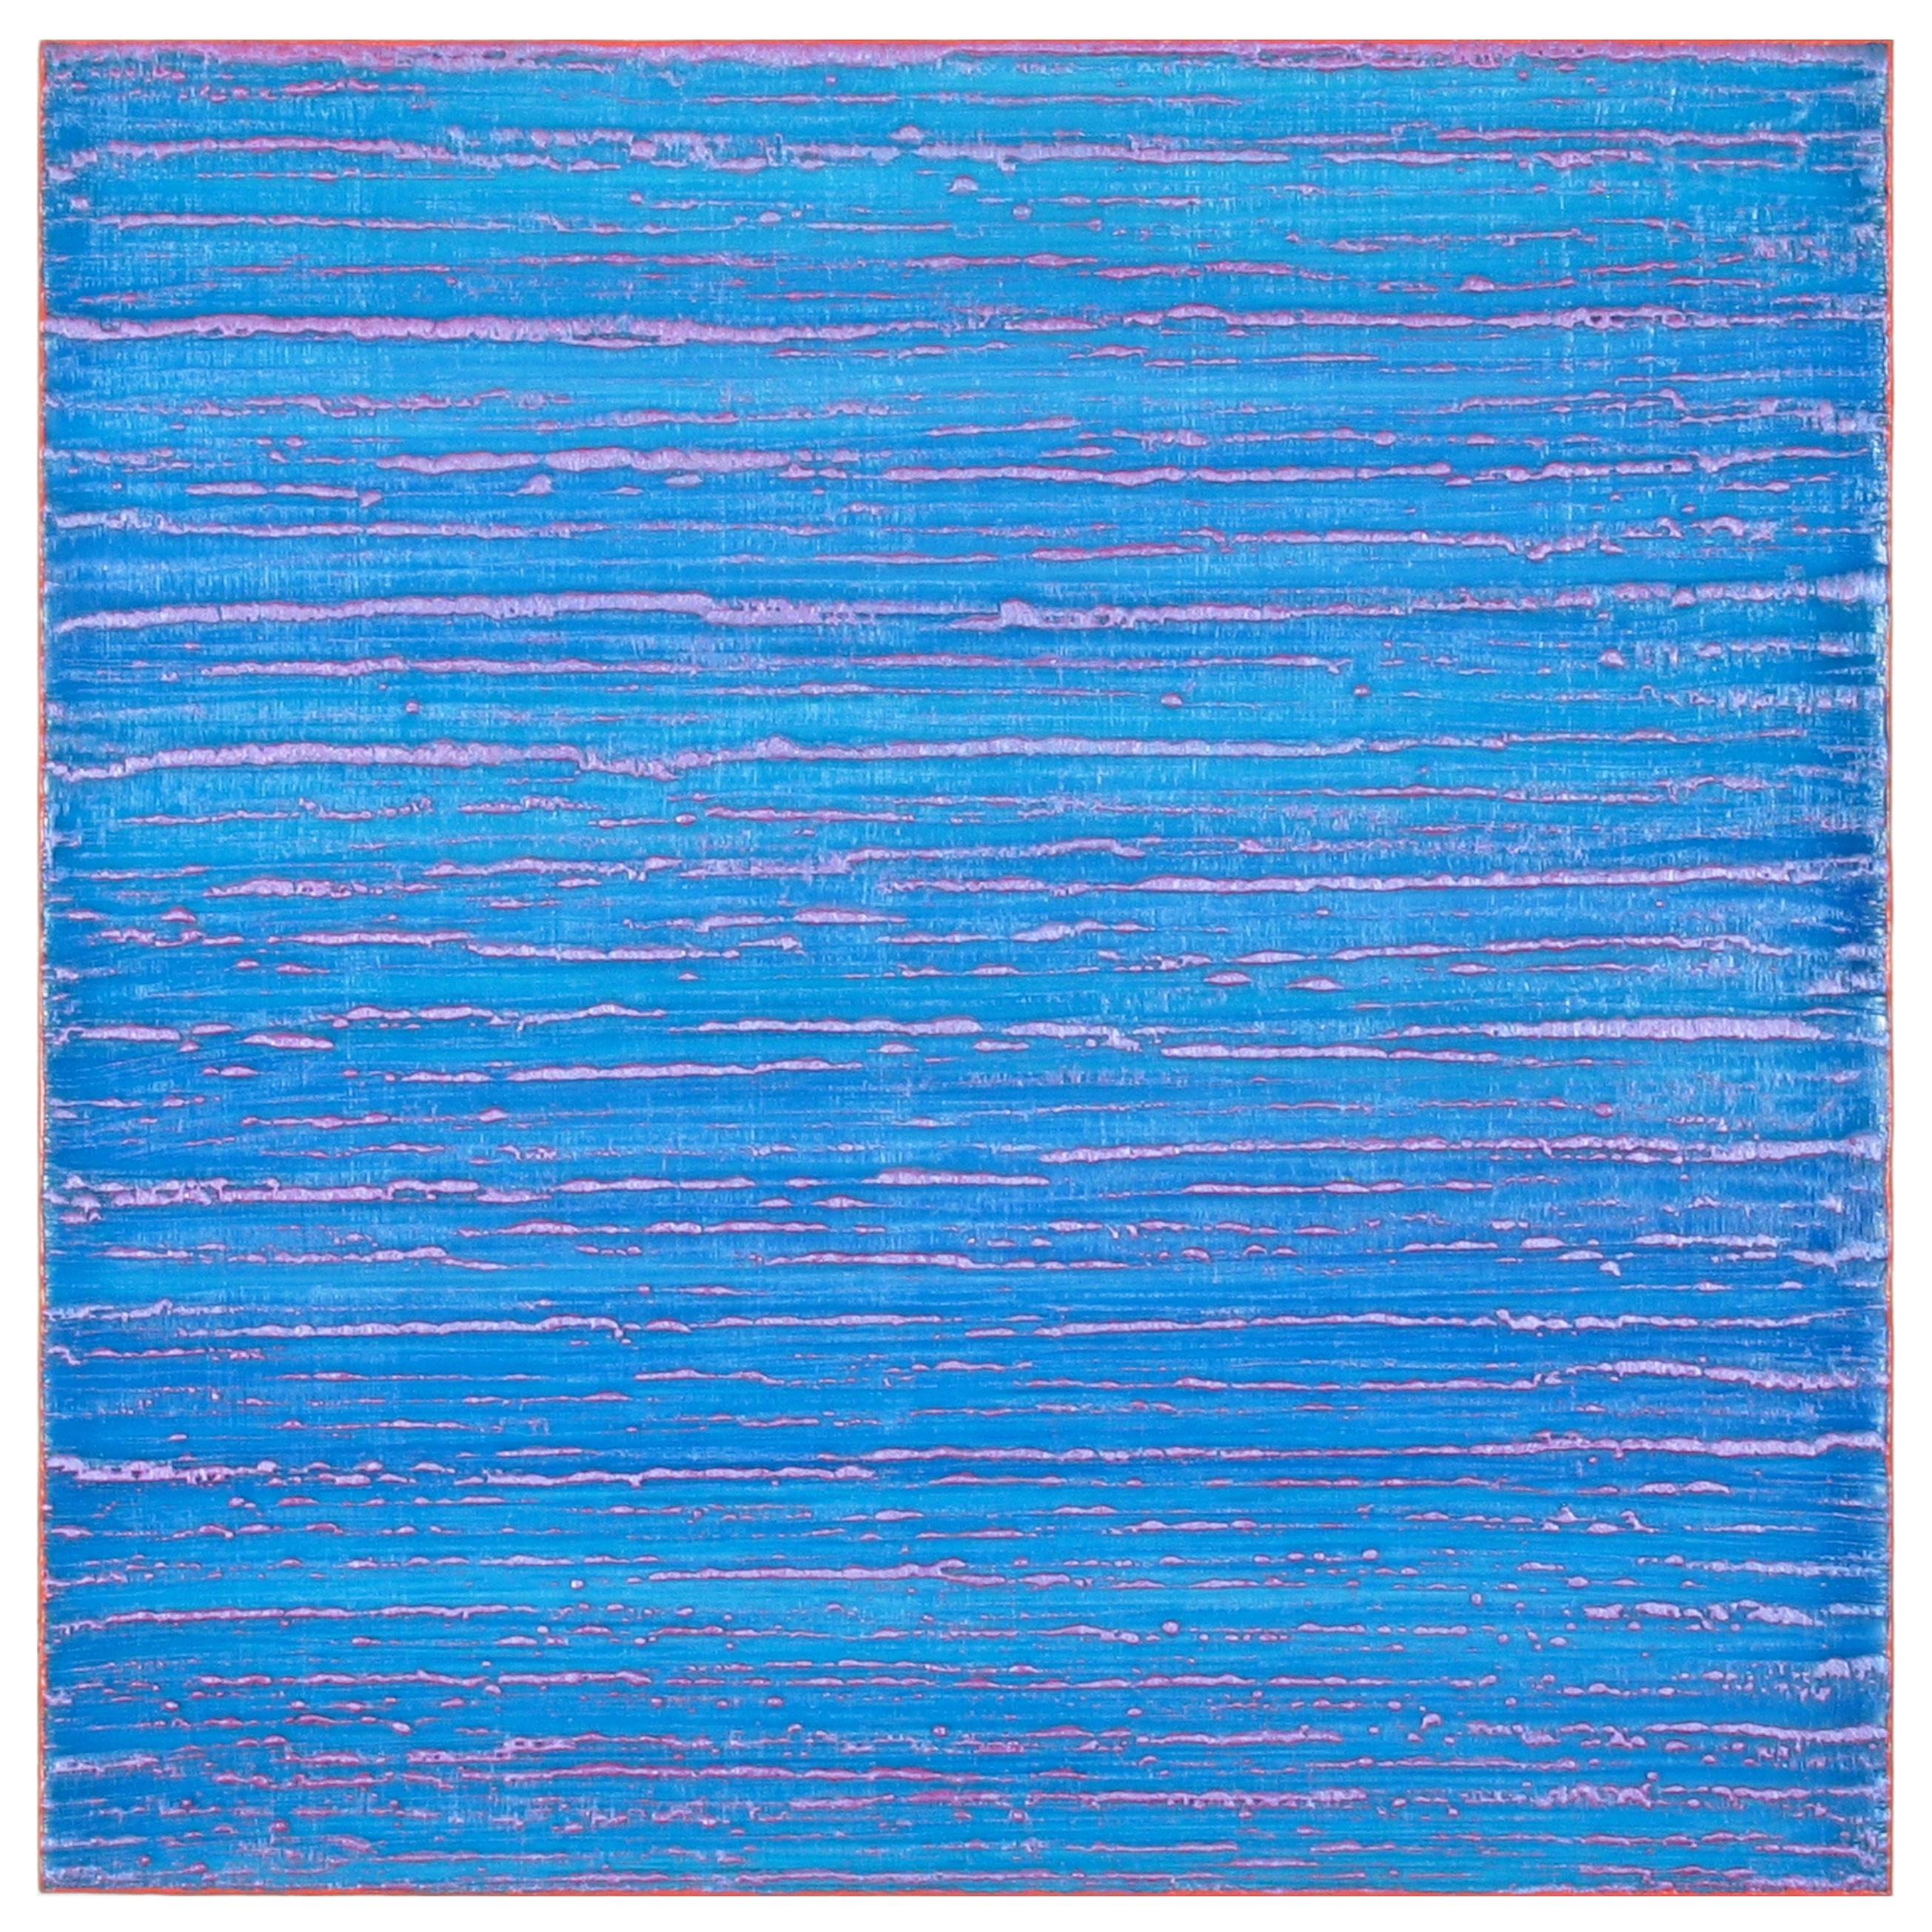 Silk Road 375, 2017, à l'encaustique sur panneau, 12 x 12 x 2 pouces - Bleu Abstract Painting par Joanne Mattera